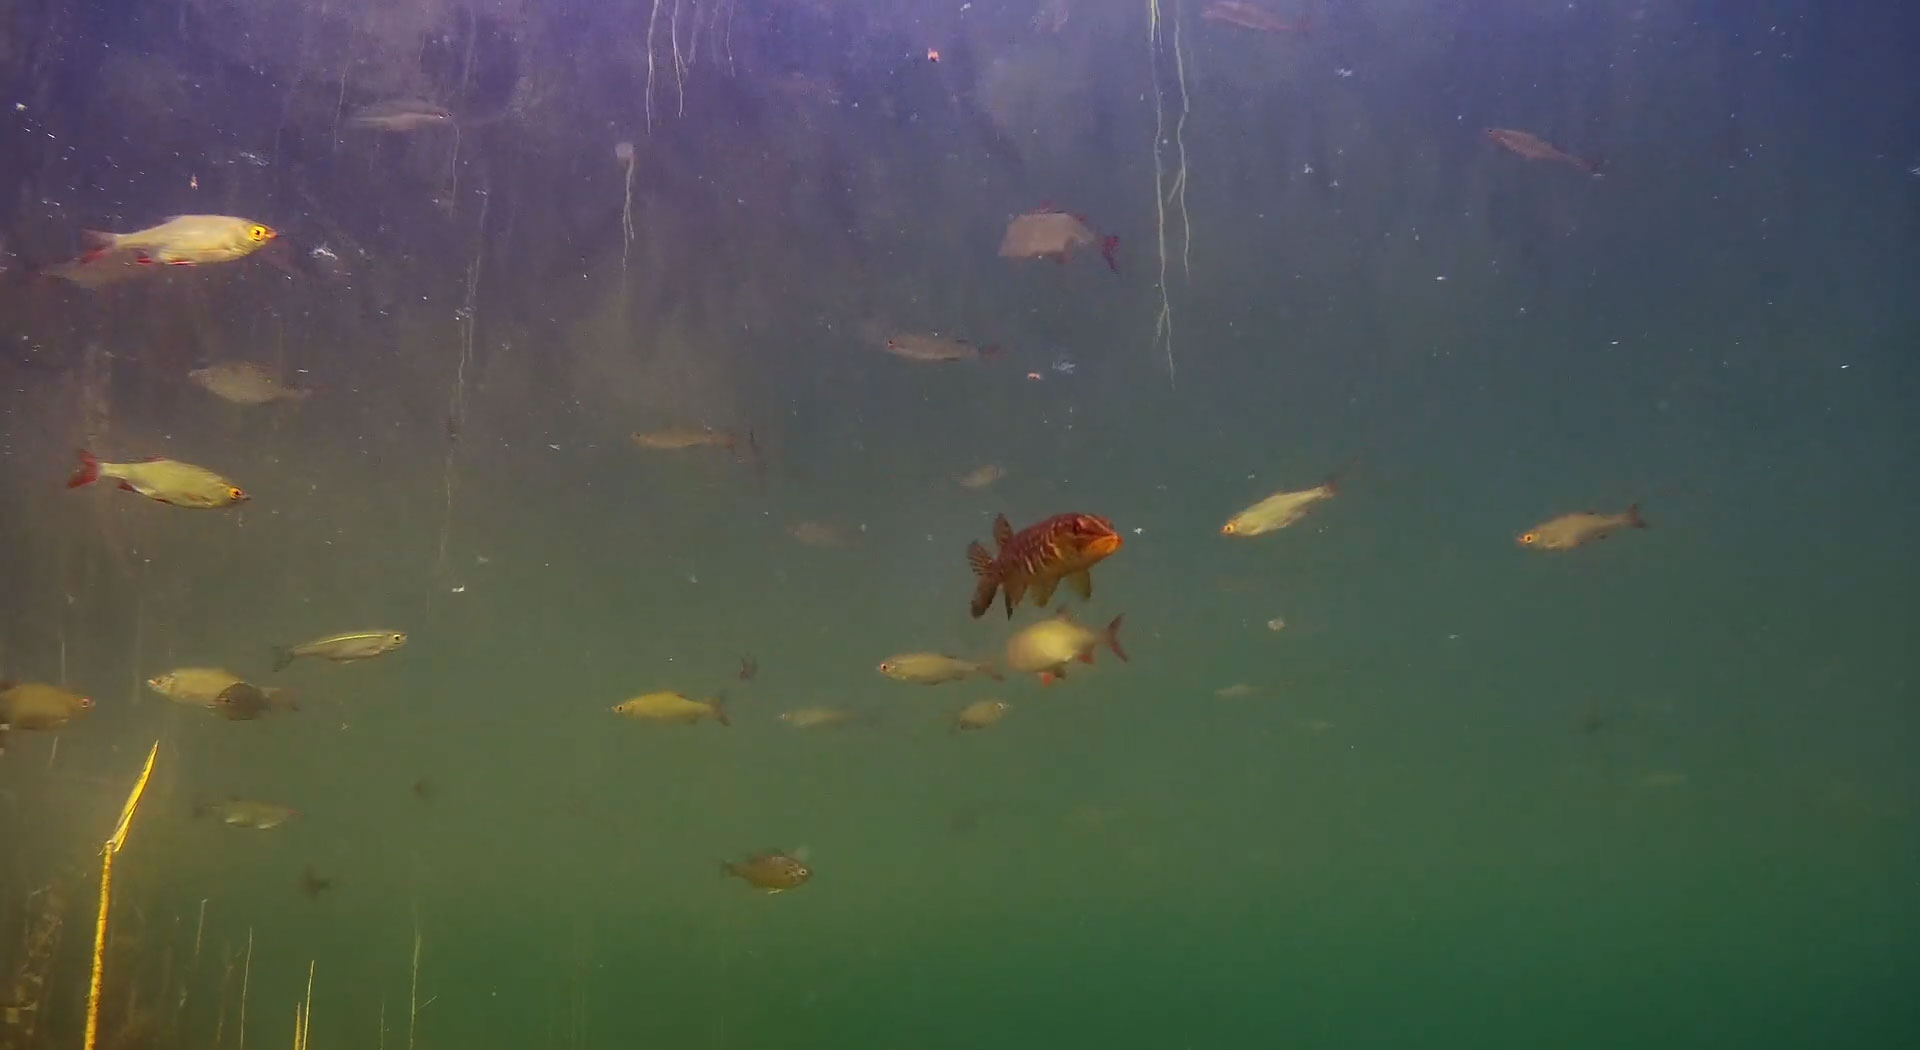 grass-pickerel-underwater-footage.jpg